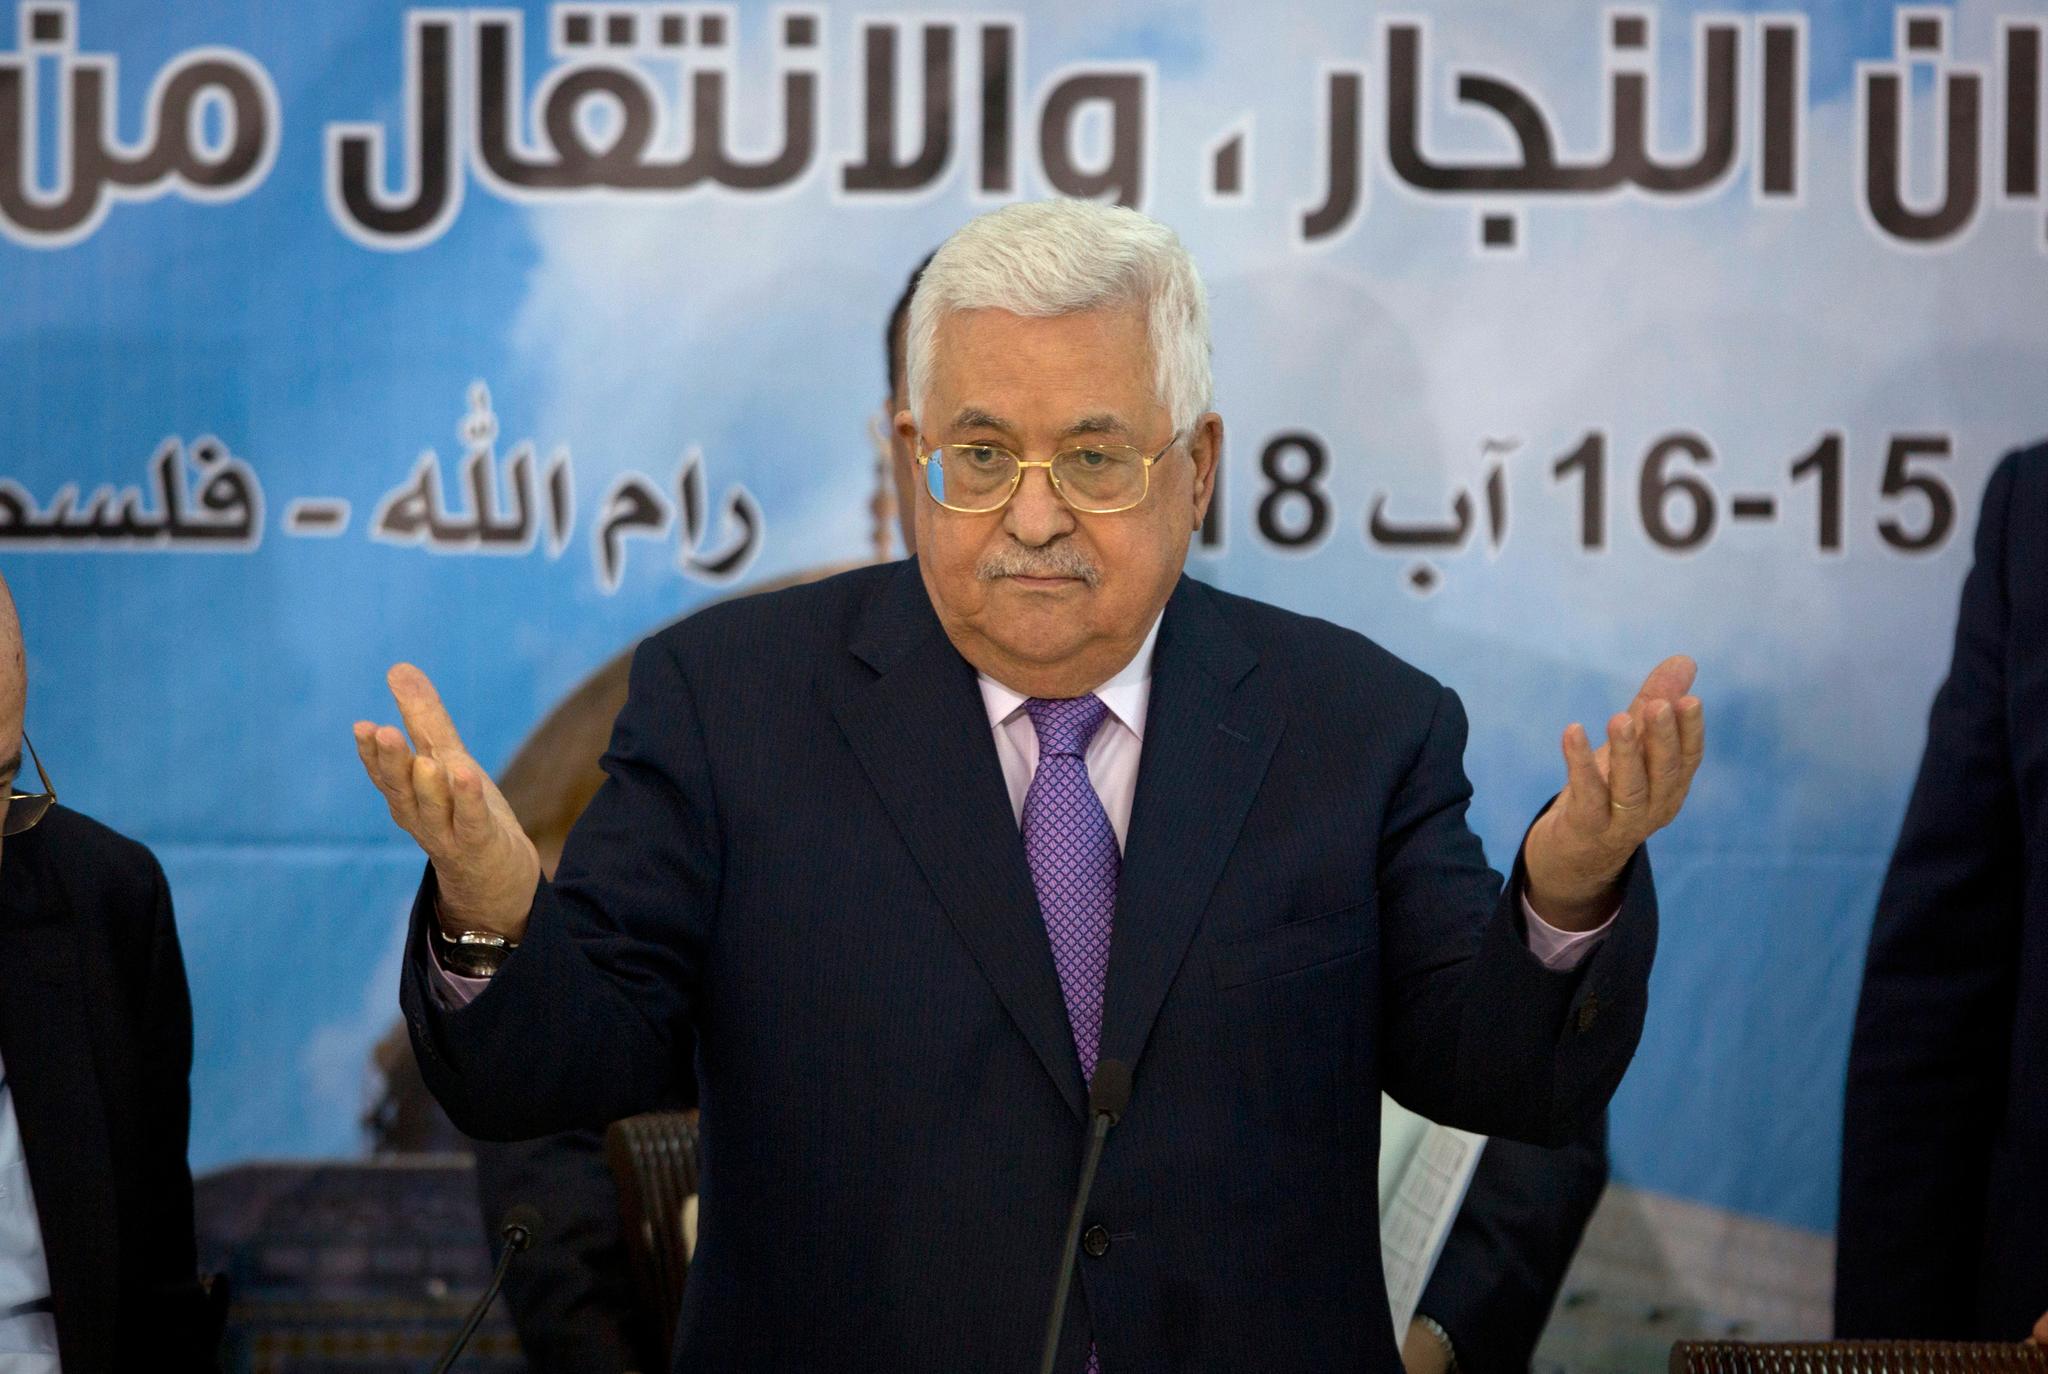 Palestinernes president Mahmoud Abbas har vært svært kritisk til Trumps innsats som megler.